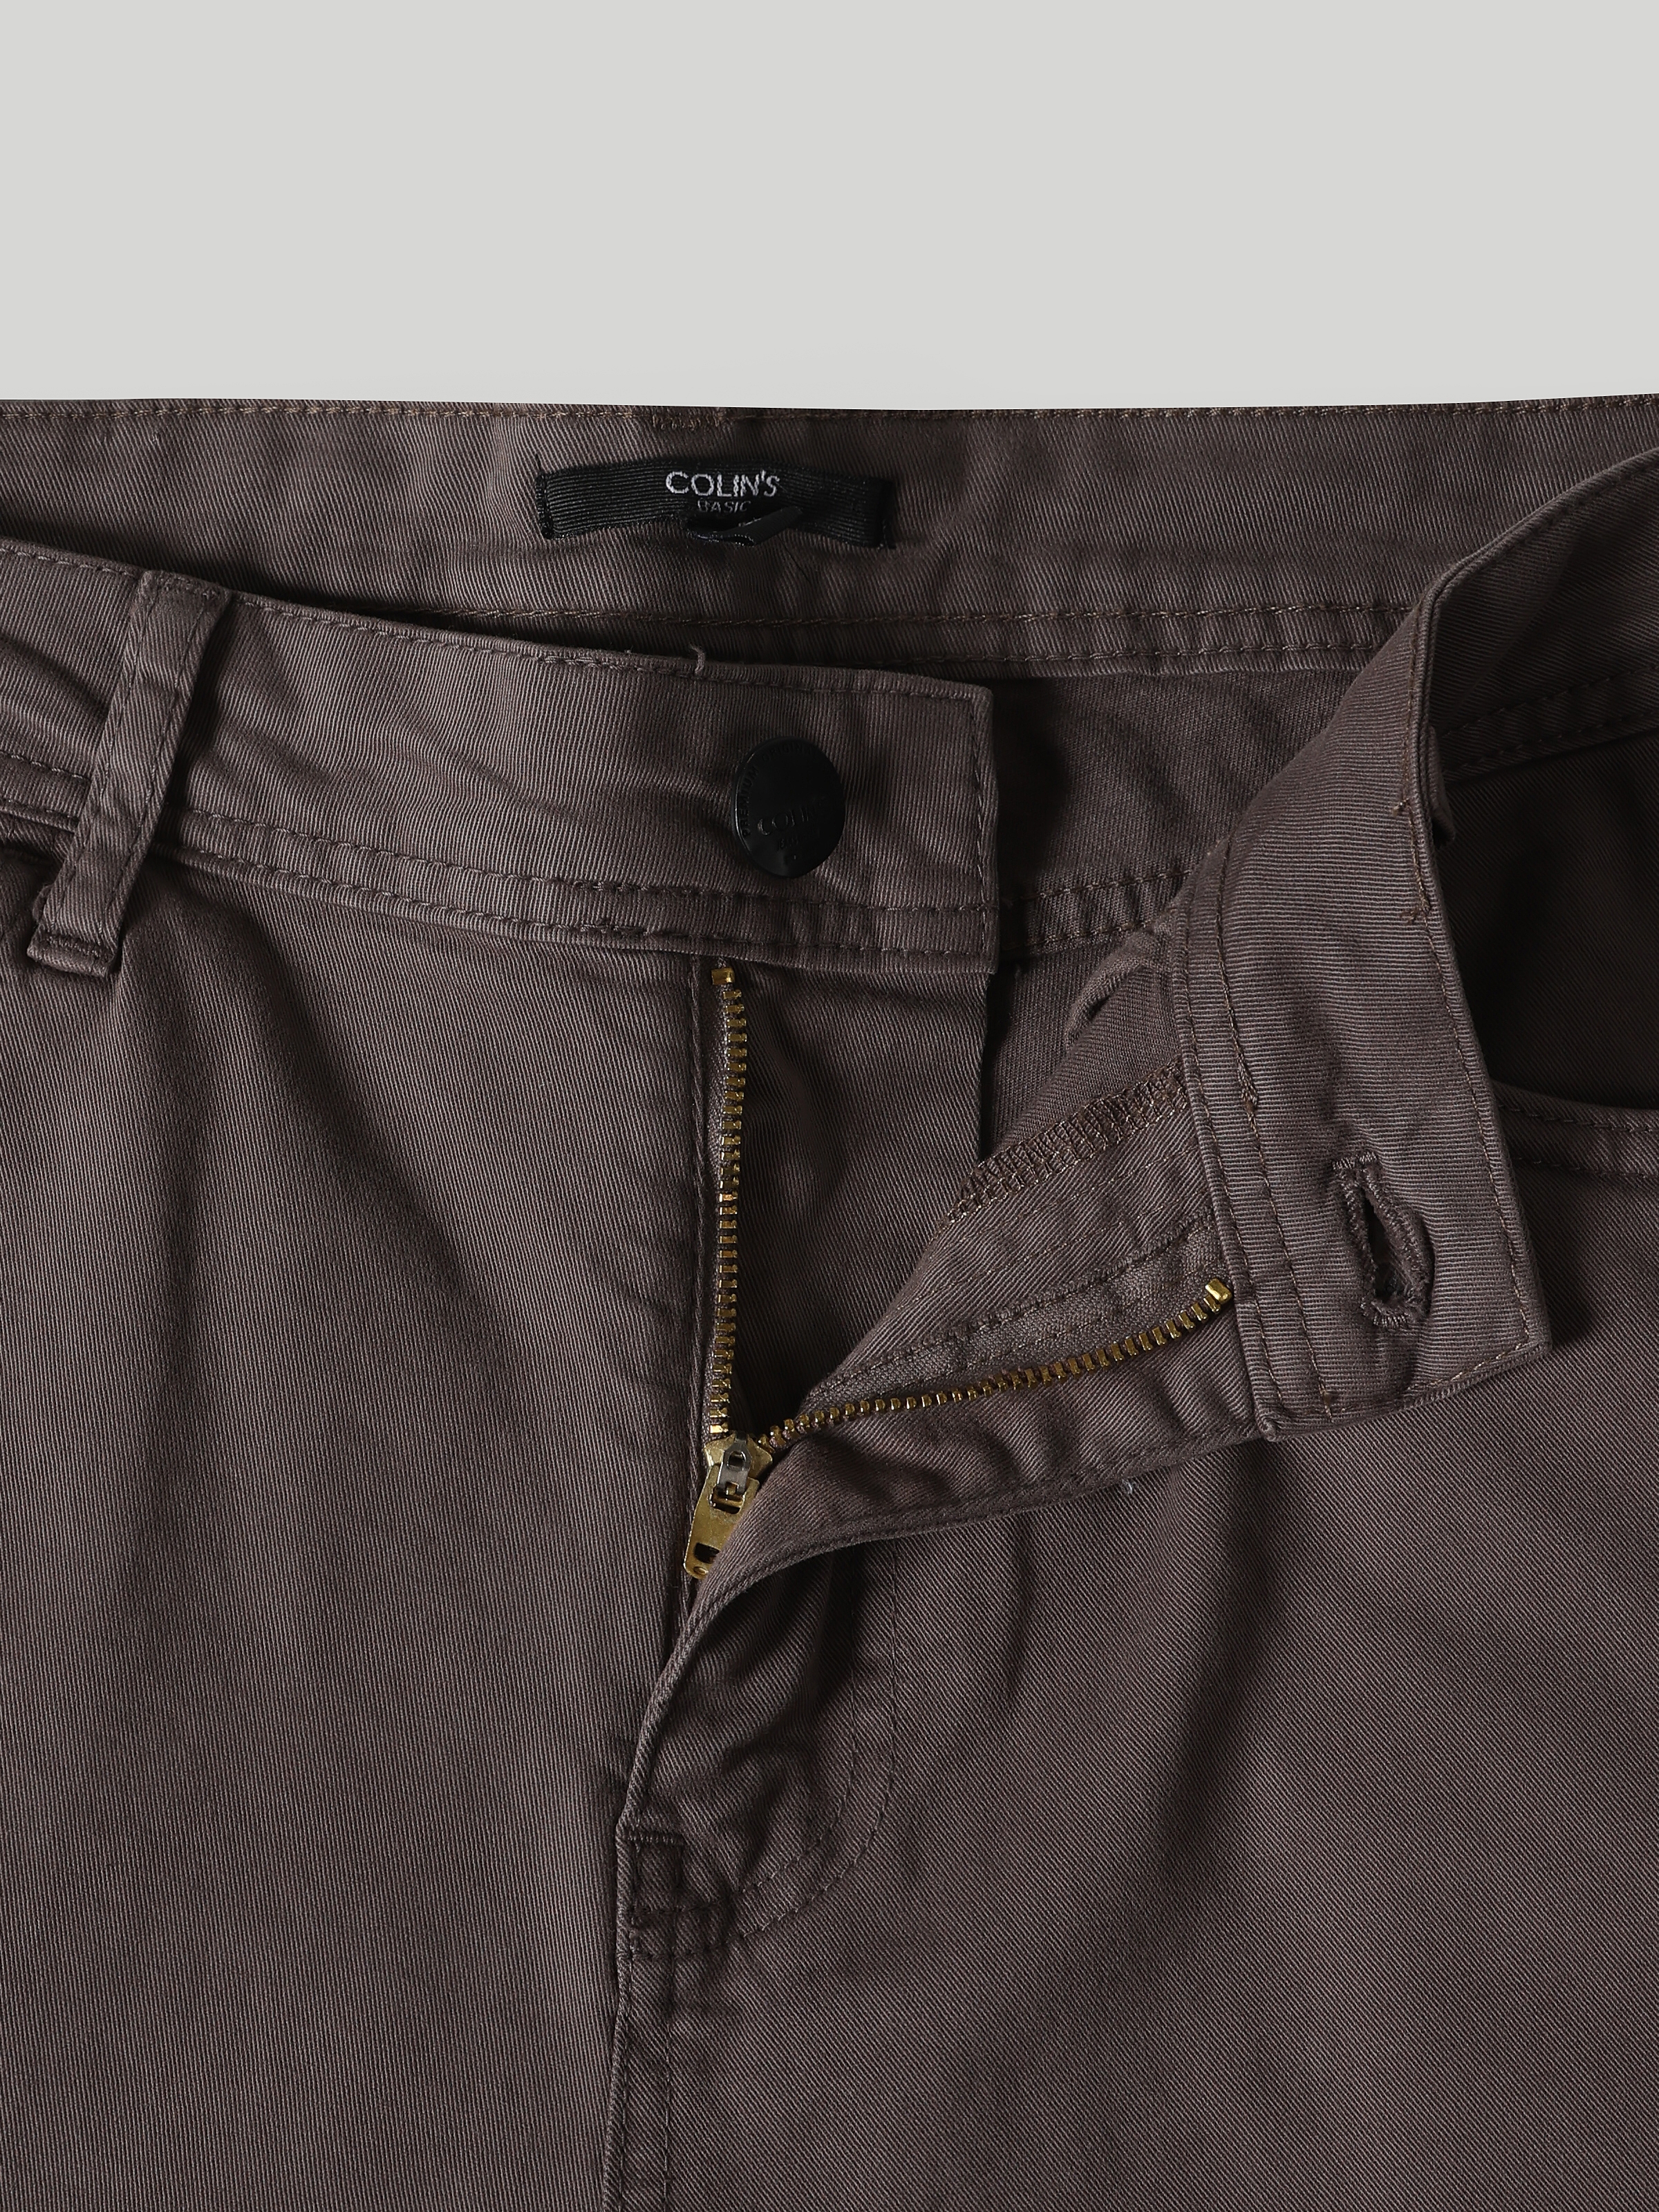 Afficher les détails de Pantalon Homme Coupe Droite Taille Basse Coupe Normale Jambe Droite Anthracite